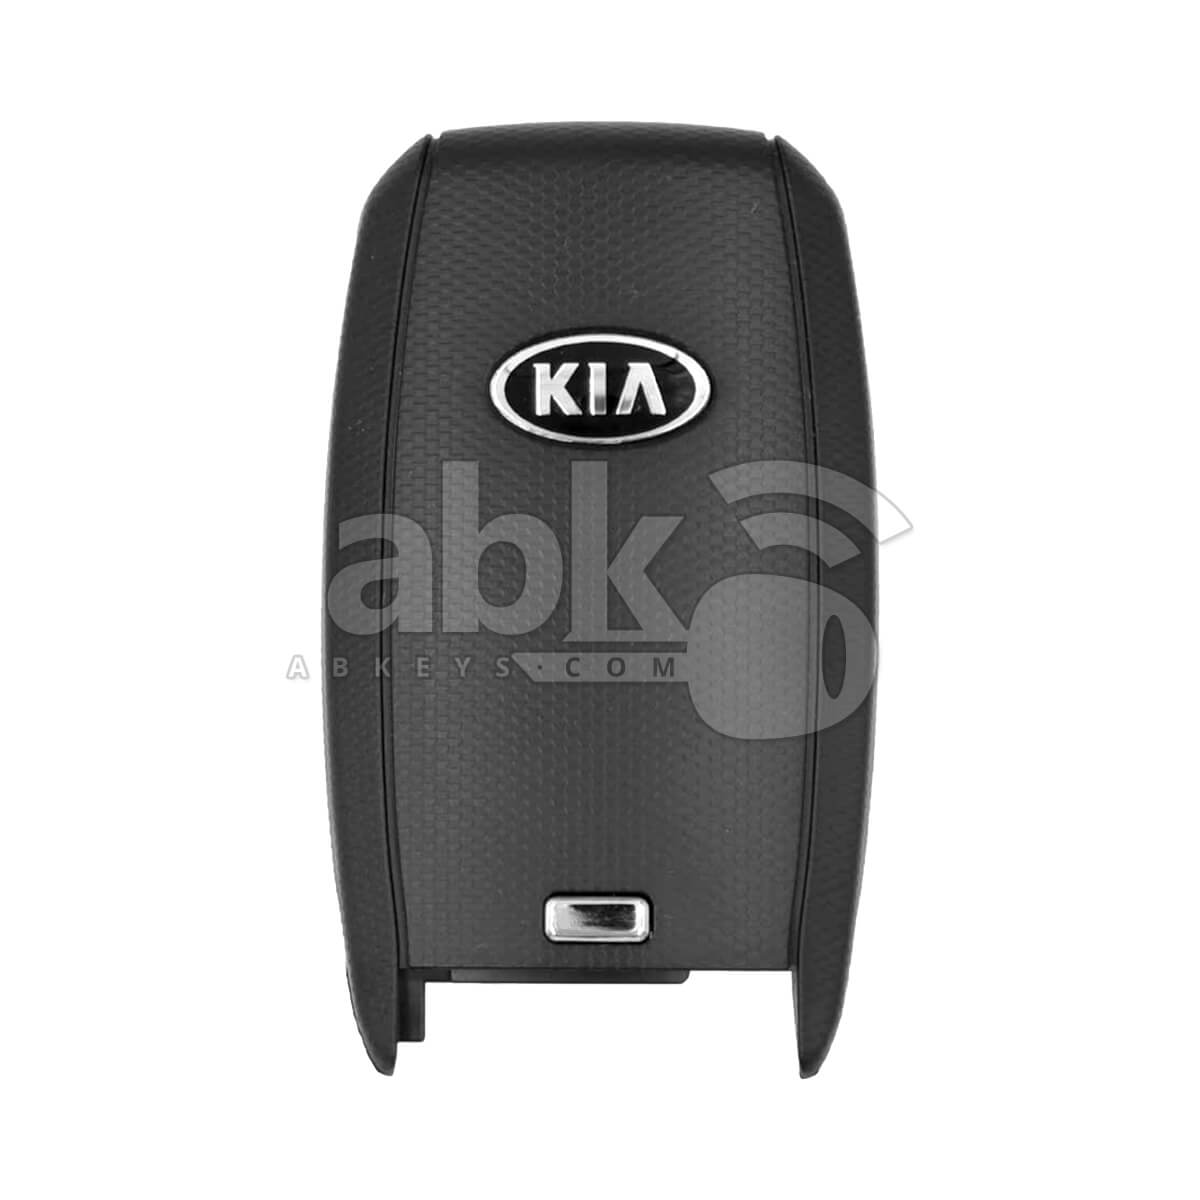 Kia Sportage 2014+ Smart Key 3B 433MHz 95440-3W600 ABK-3544